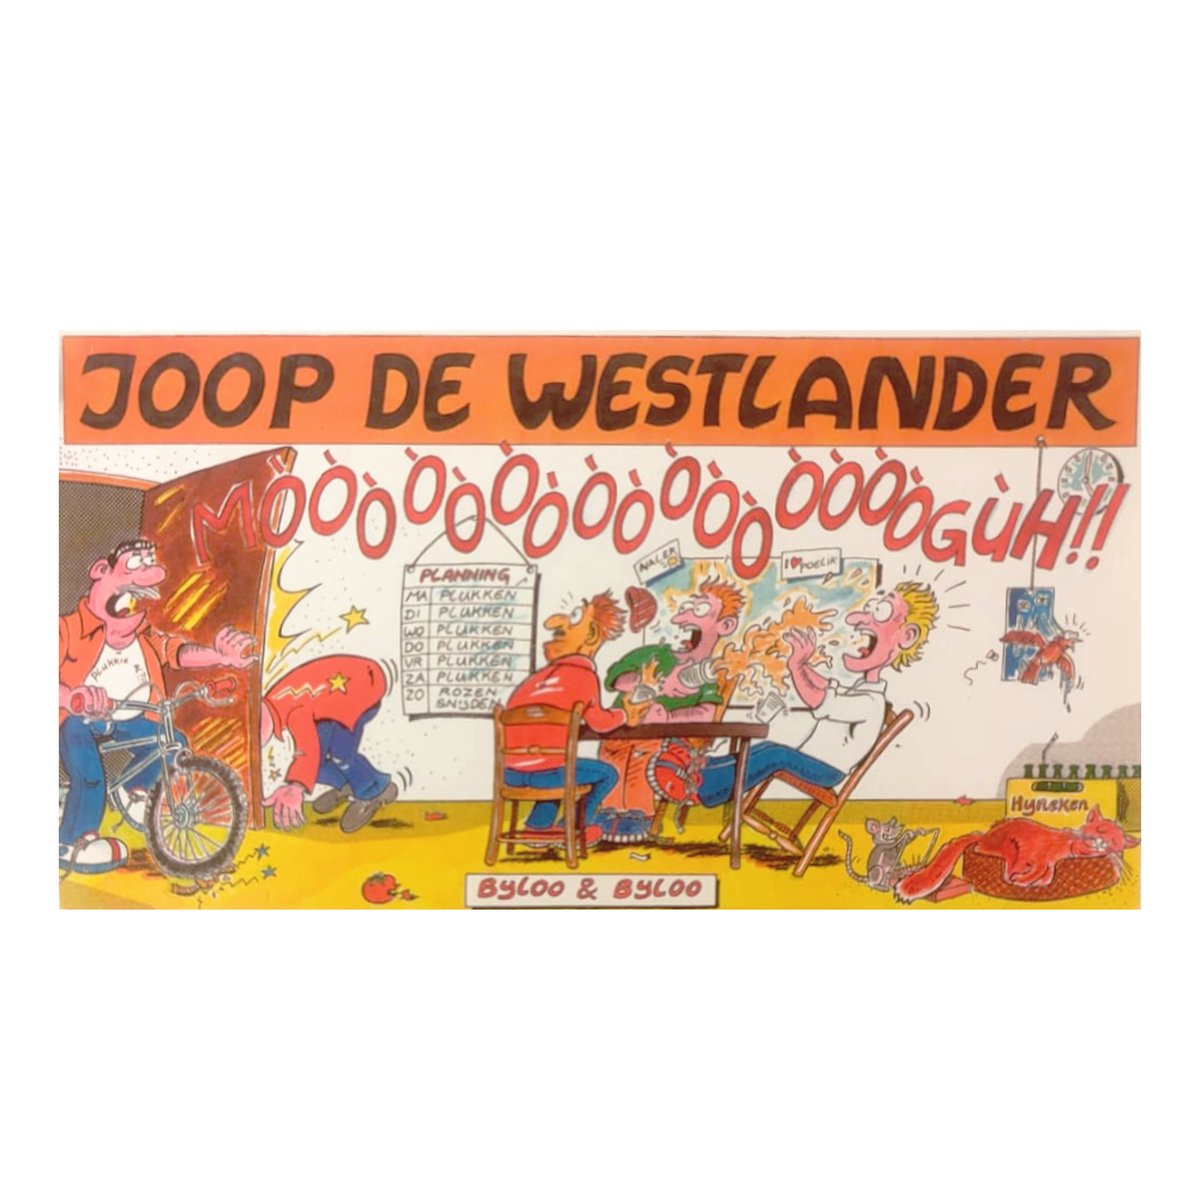 Boek - Joop De Westlander - Deel 4 - Mòòòòòòòòògùh!!